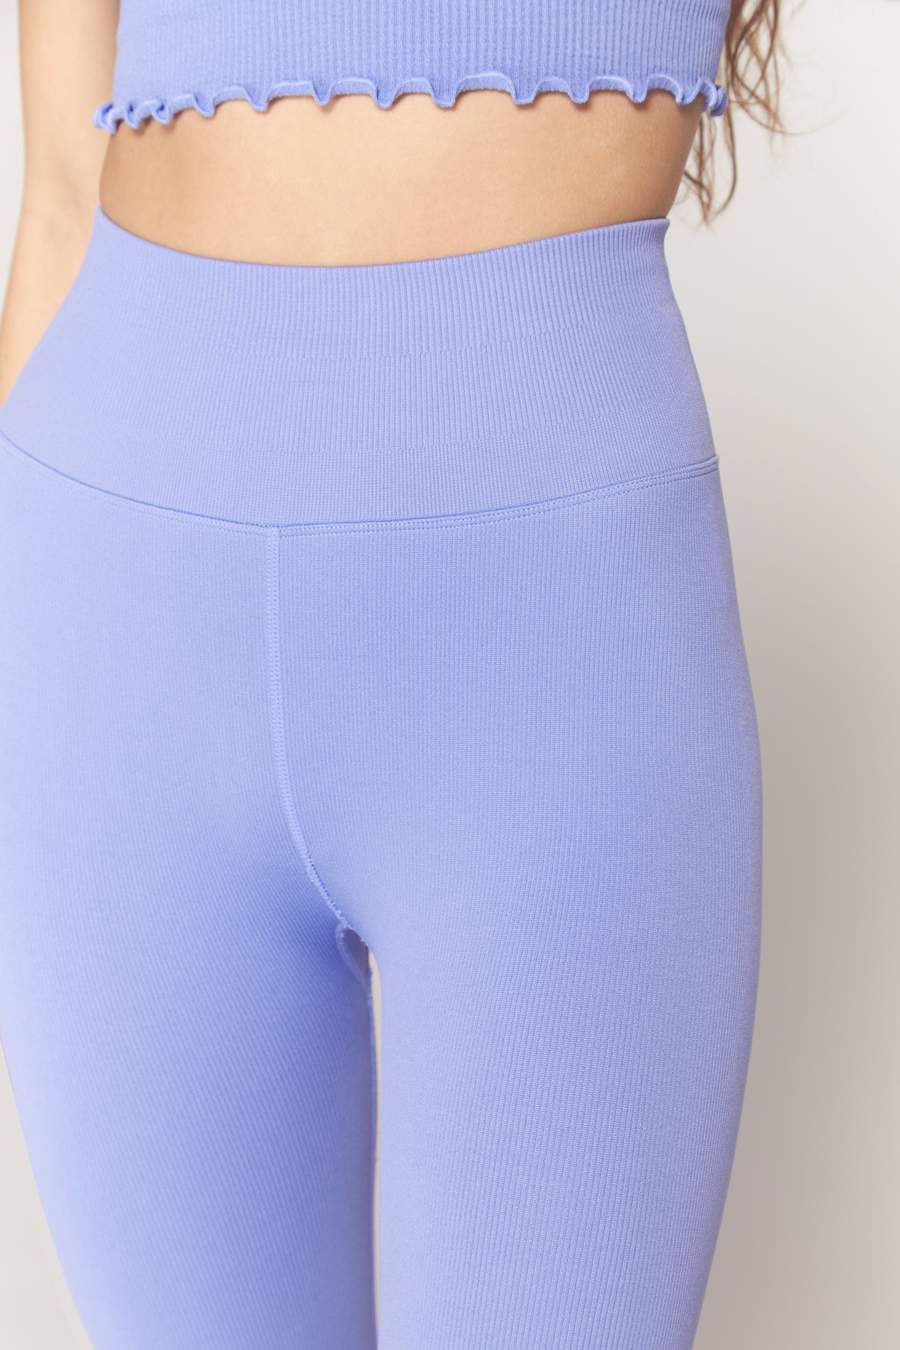 Love Yoga Shorts - Royal Blue – Beckons Inspired Clothing